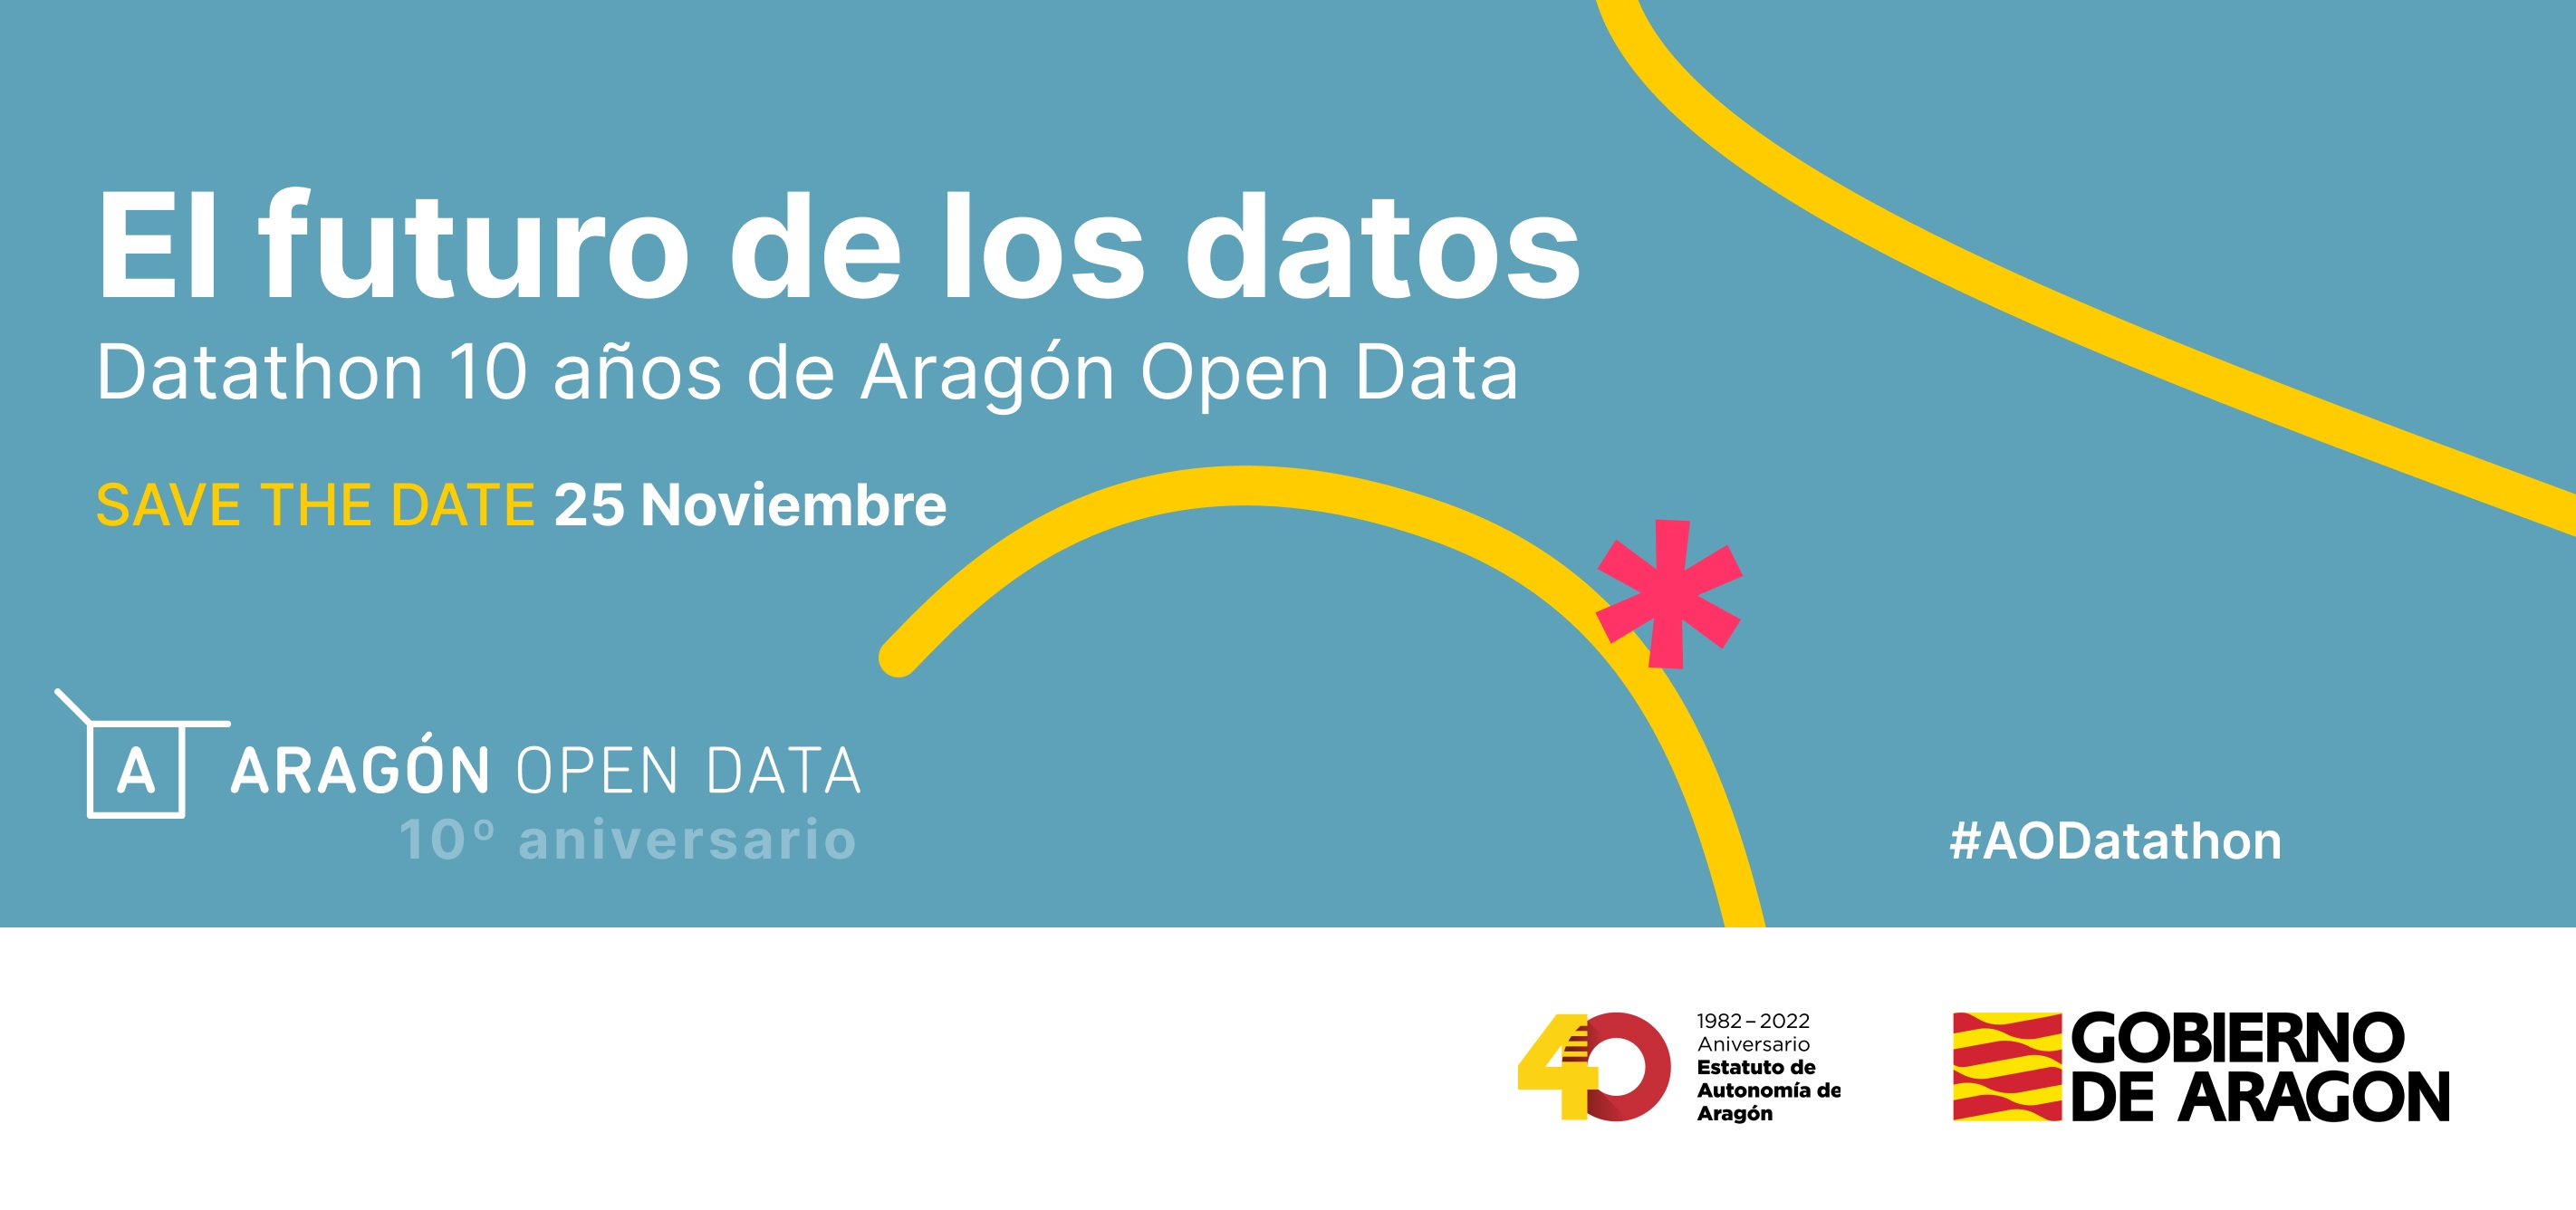 El futuro de los datos : datathon 10 años de Aragón Open Data. Save the date 25 noviembre de 2022